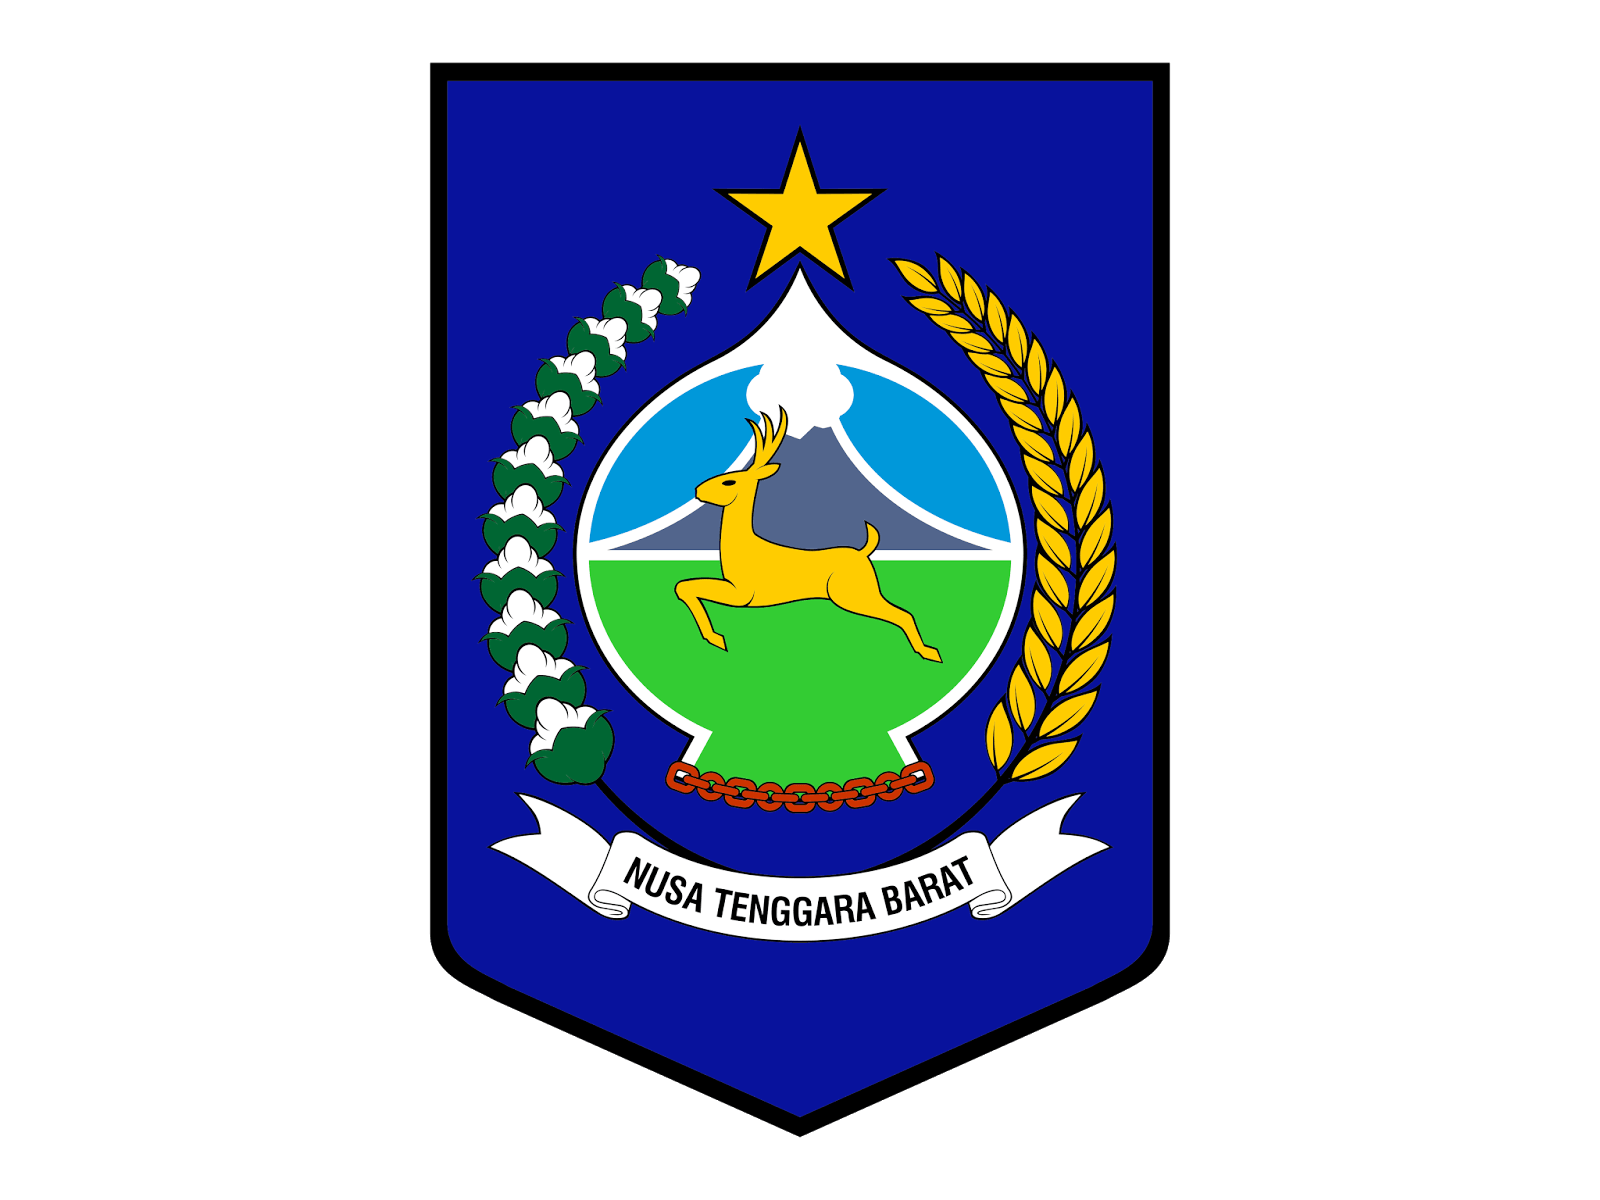 NTB Logo - Logo Provinsi Nusa Tenggara Barat ( NTB ) Format Cdr & Png. GUDRIL